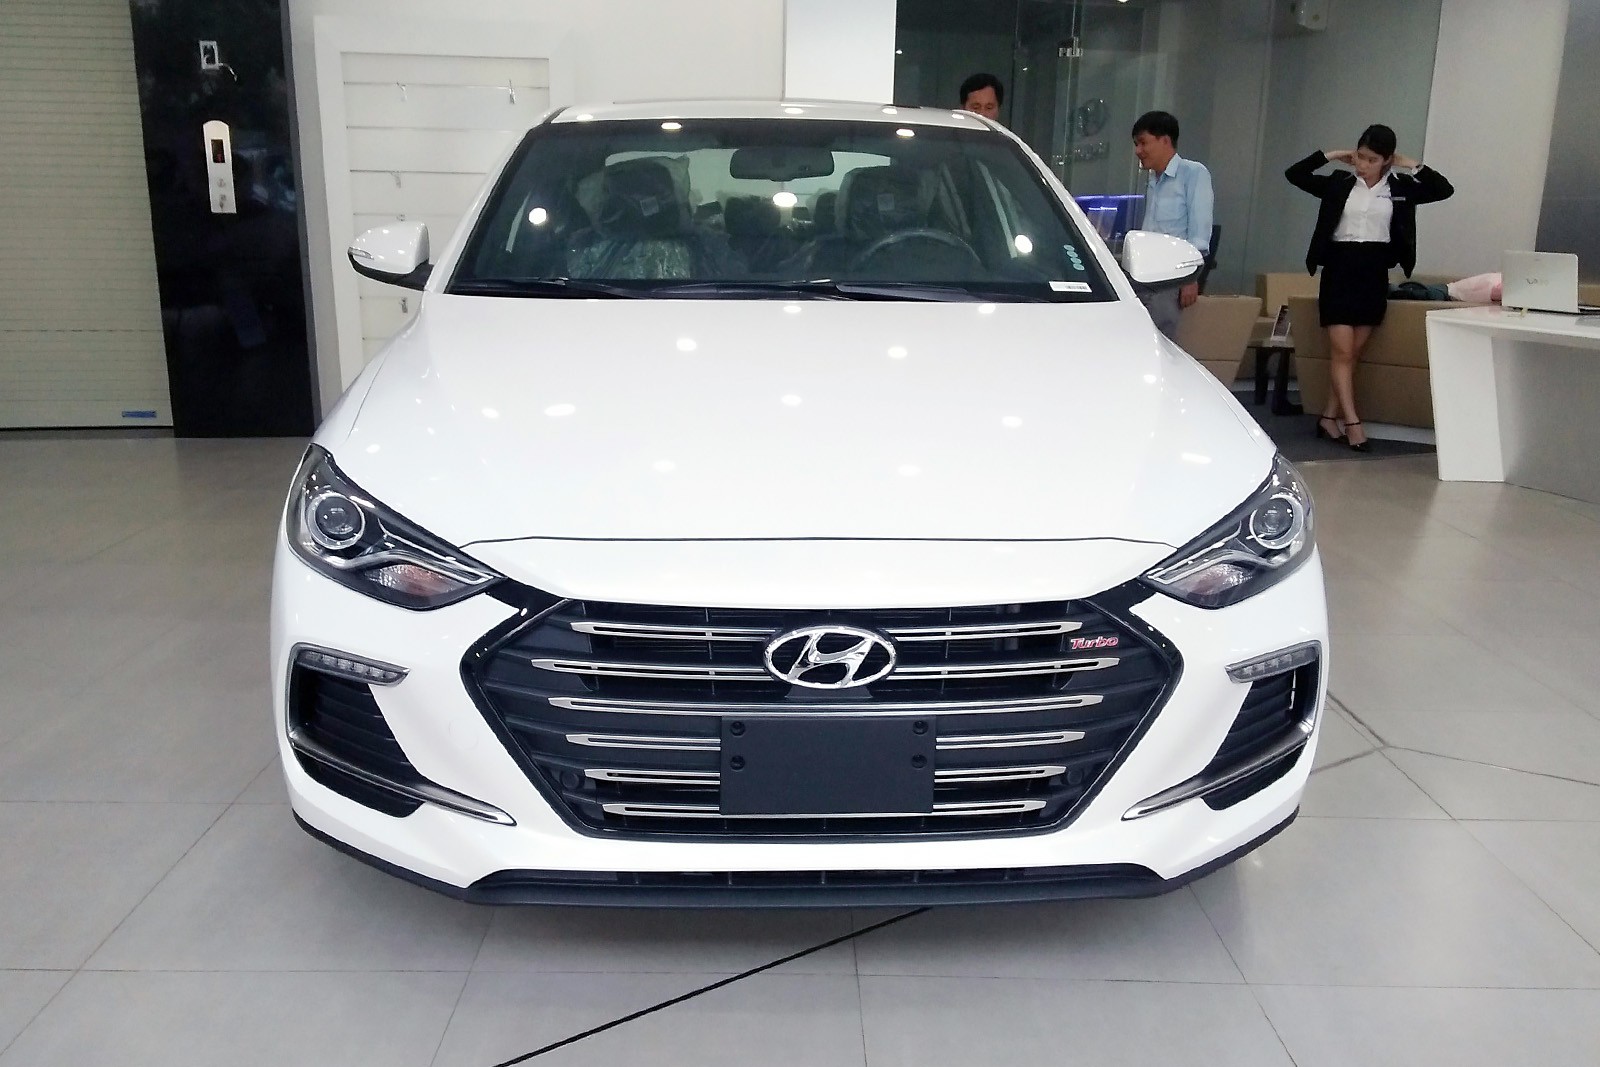 Hyundai Elantra giảm giá khoảng 5 triệu đồng tại các đại lý chính hãng a1